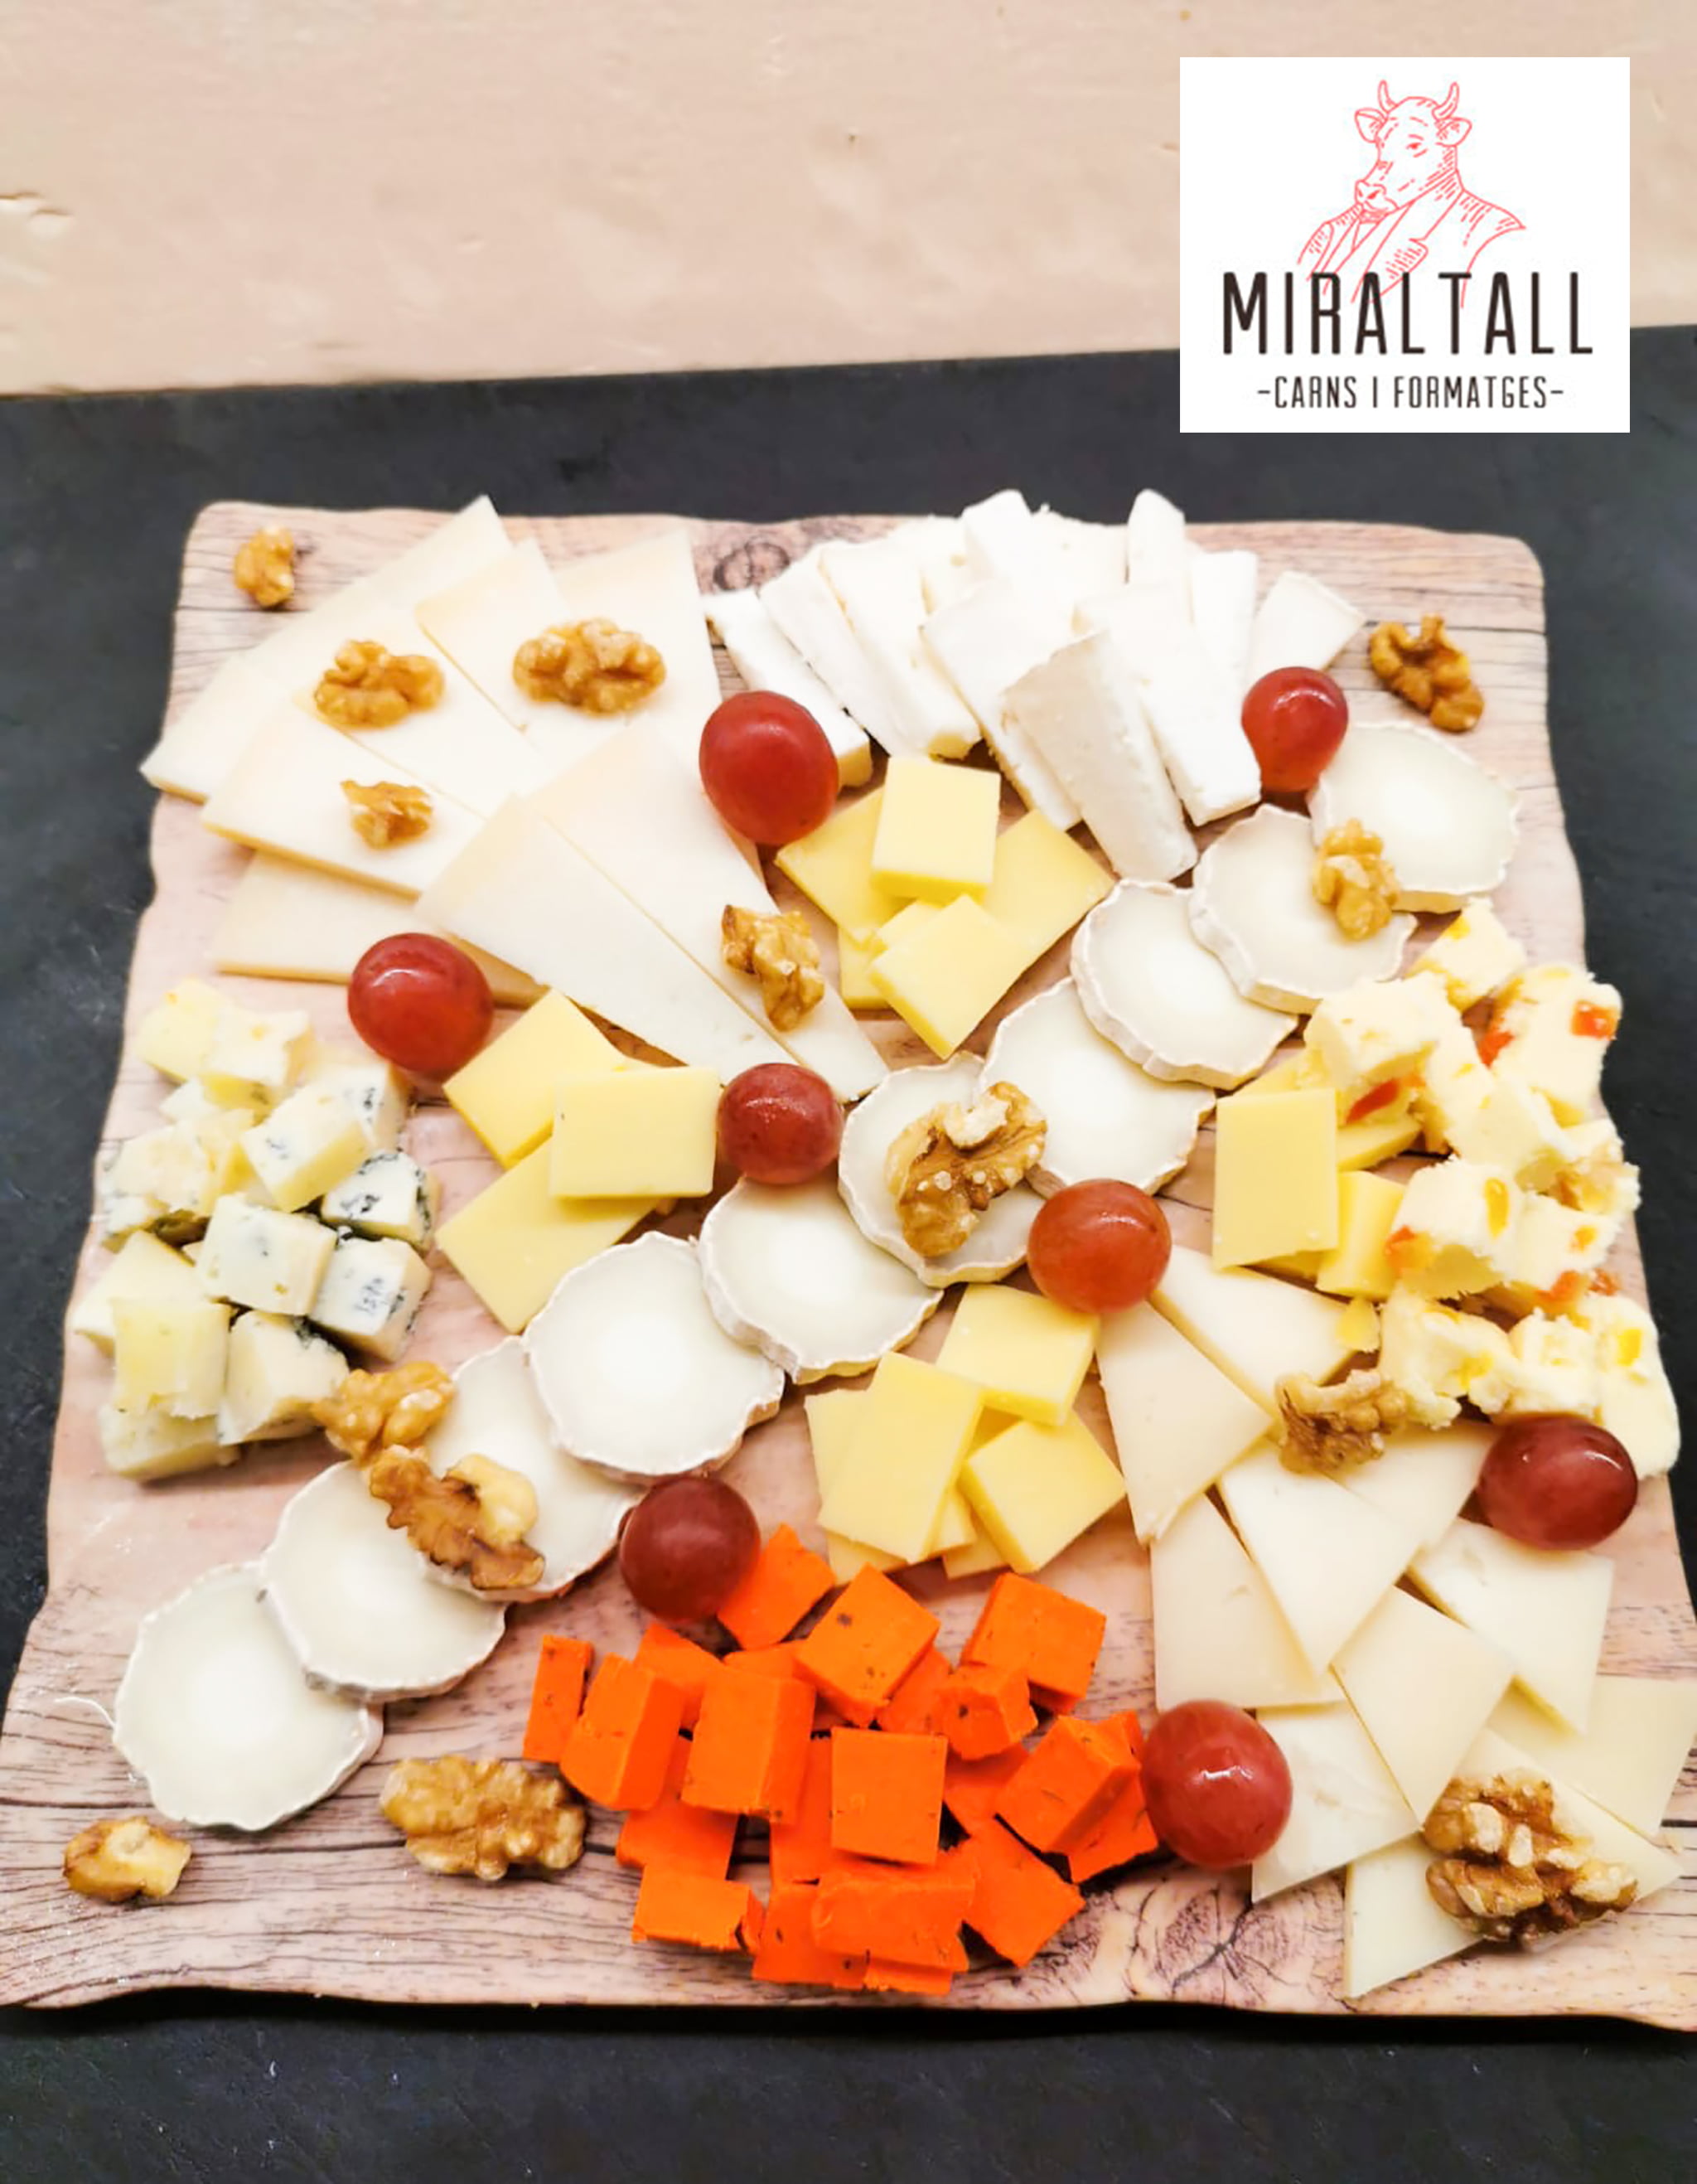 Miraltall Carns i Formatges – Enorme variedad de quesos